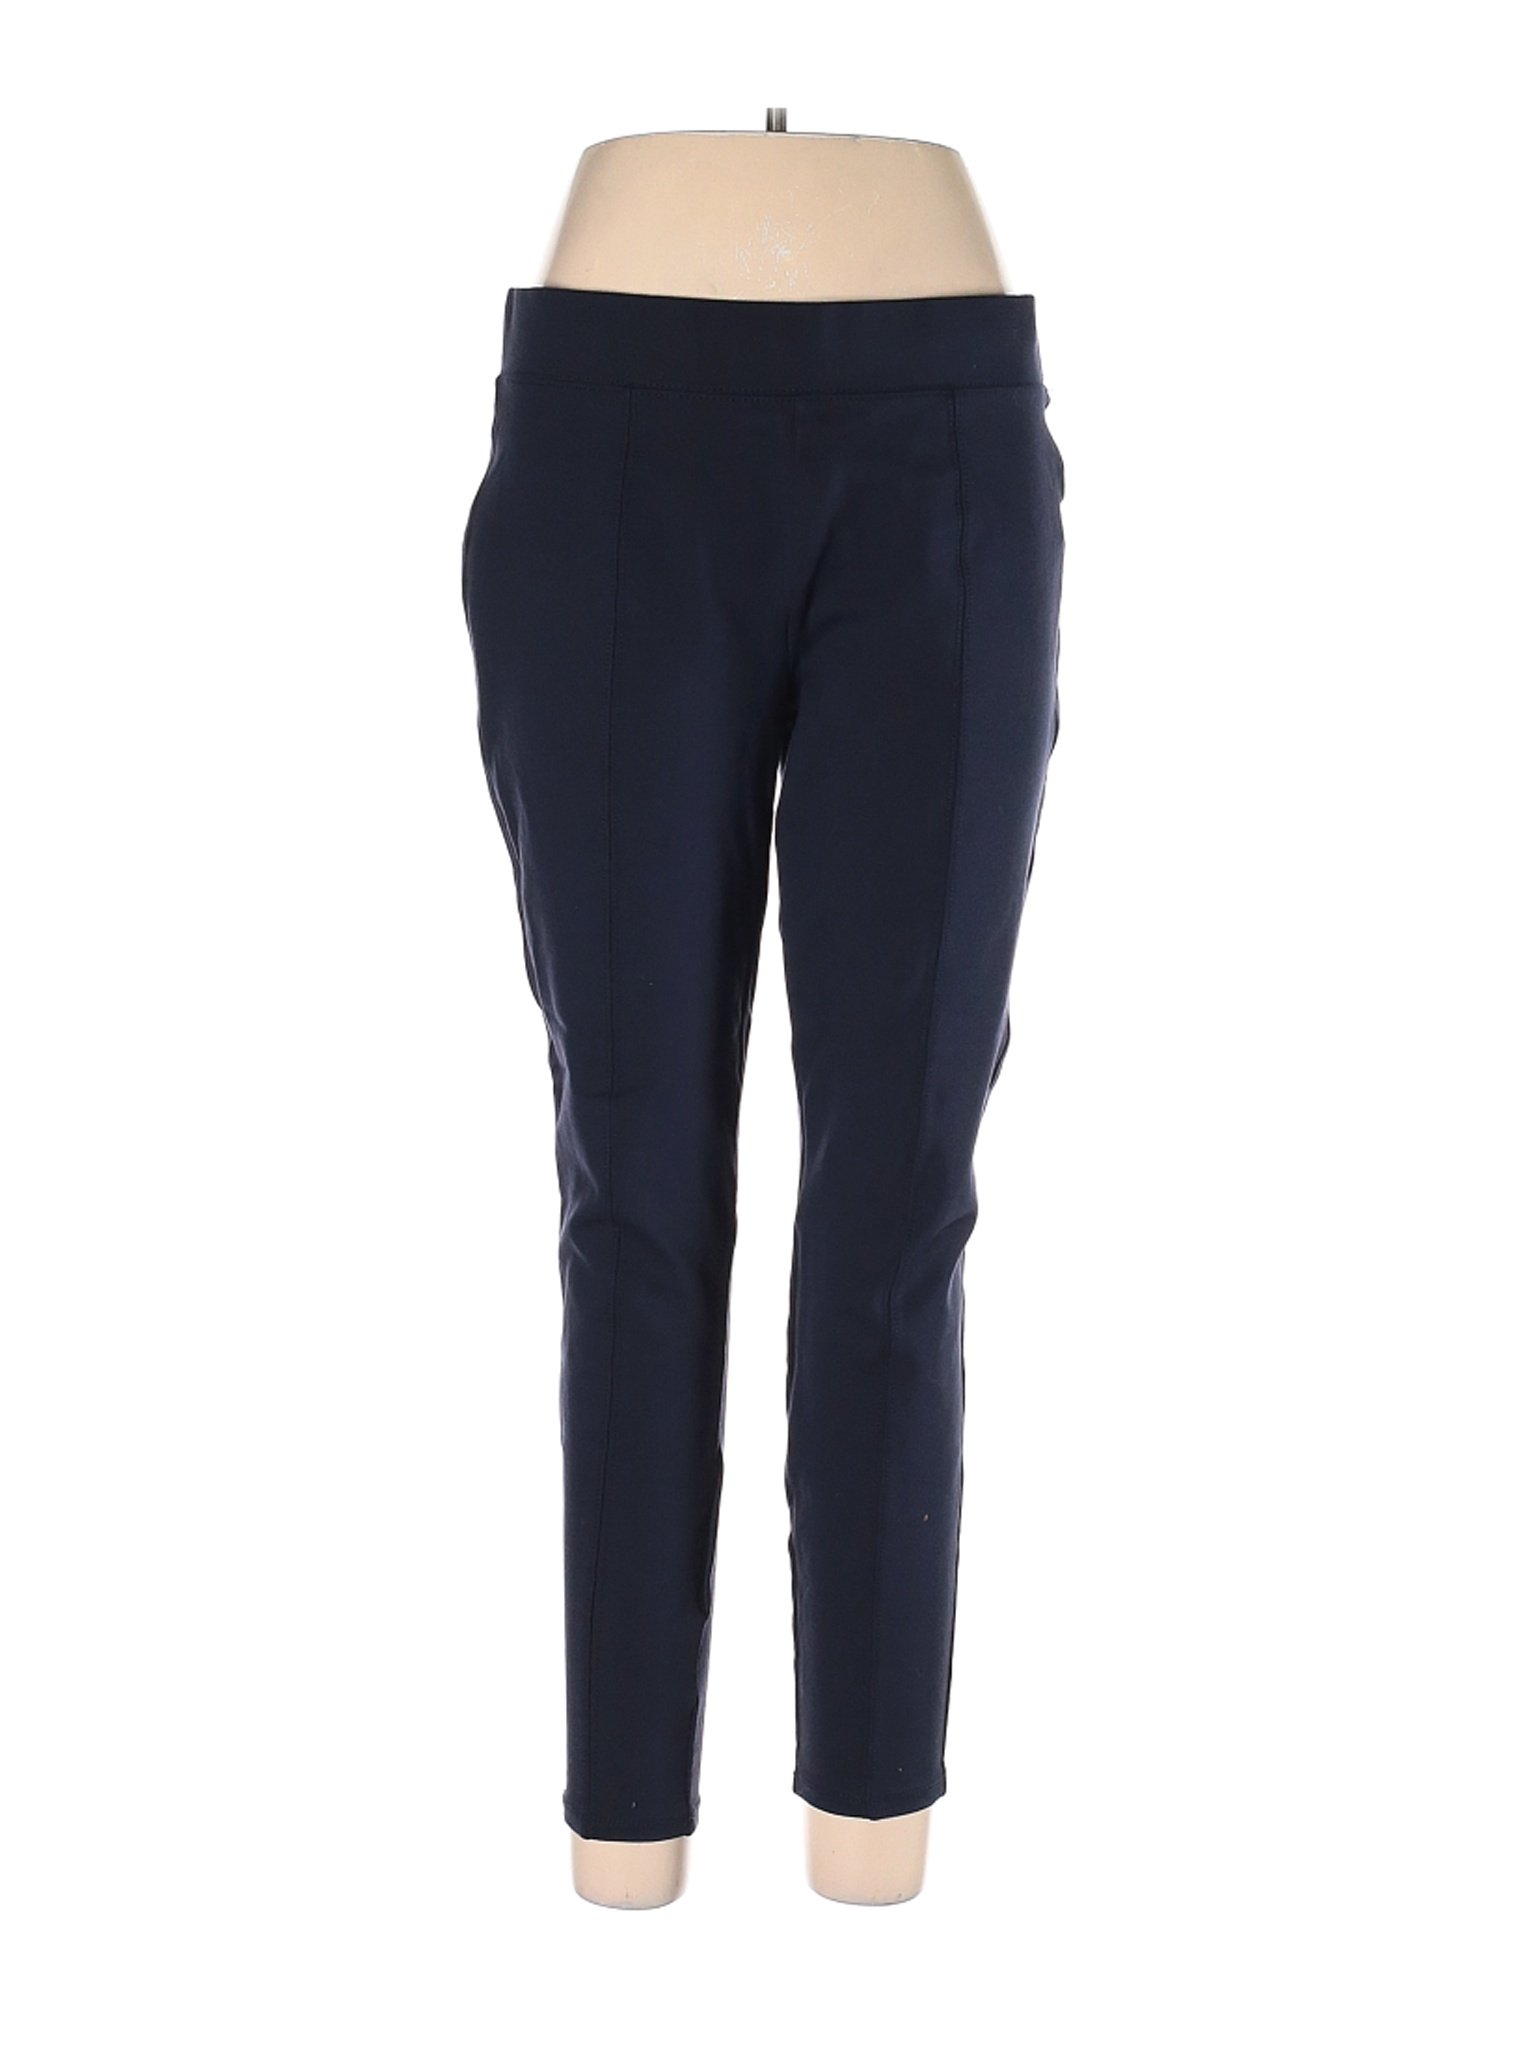 Stylus Women Blue Casual Pants L | eBay